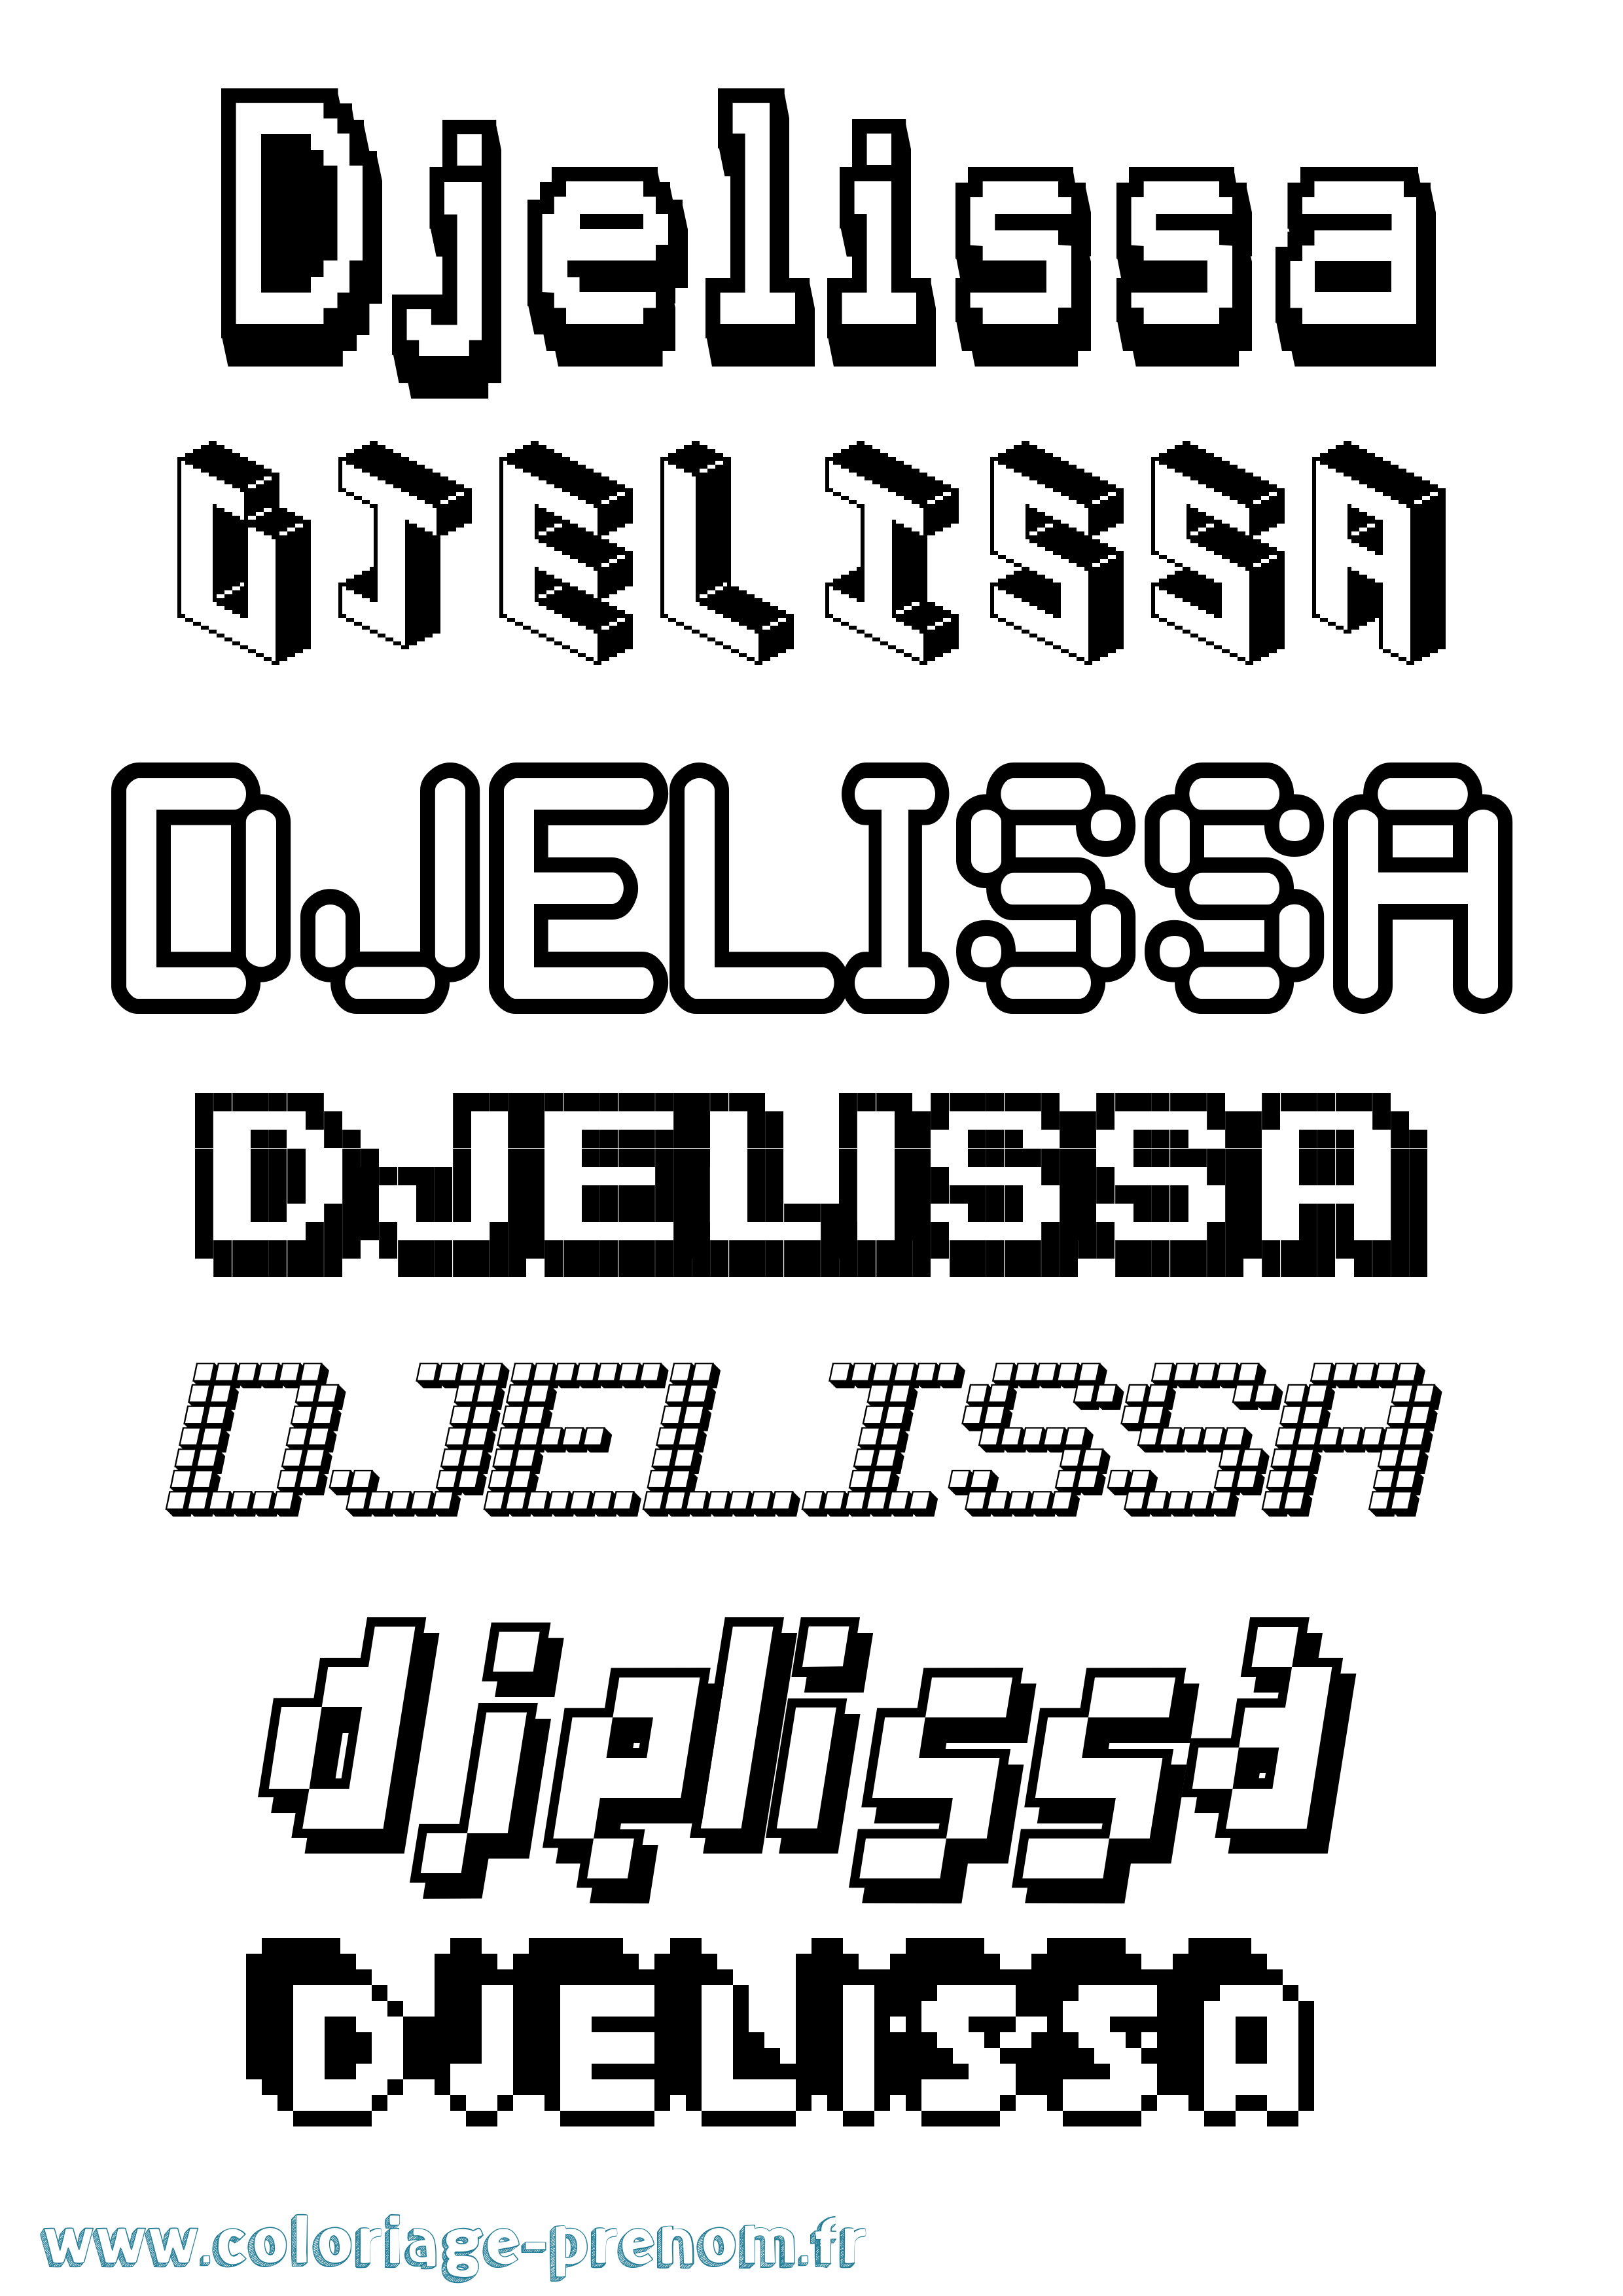 Coloriage prénom Djelissa Pixel